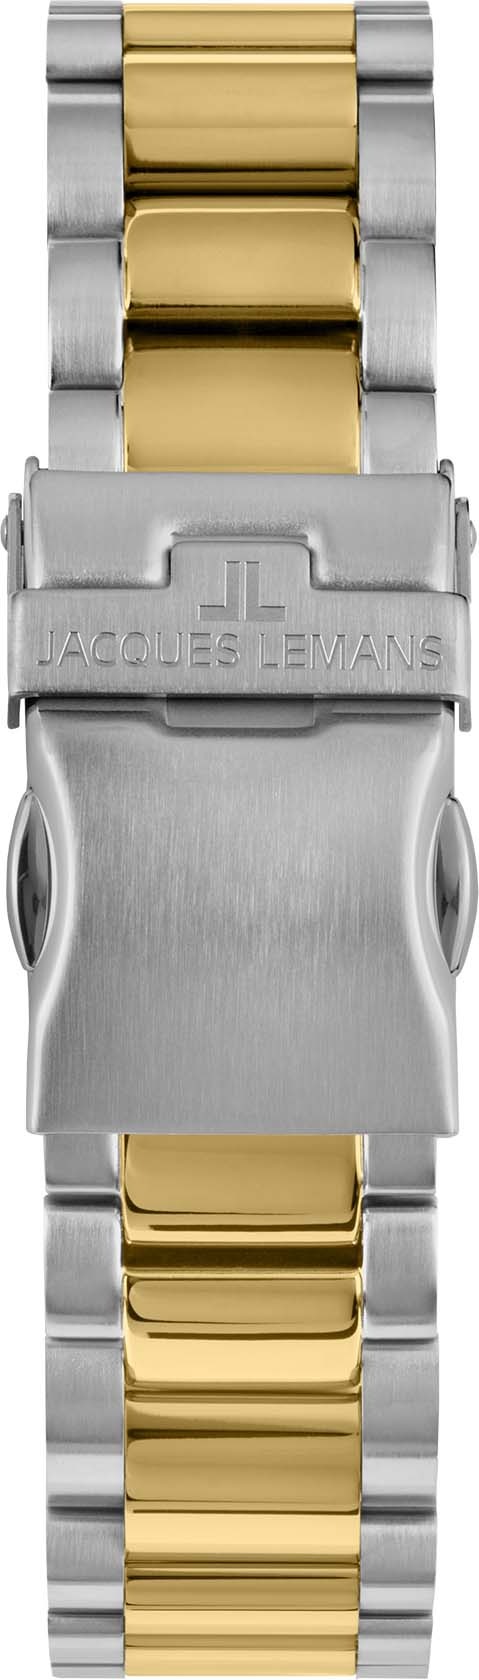 Jacques Lemans Chronograph »Liverpool, 1-2140H« bei ♕